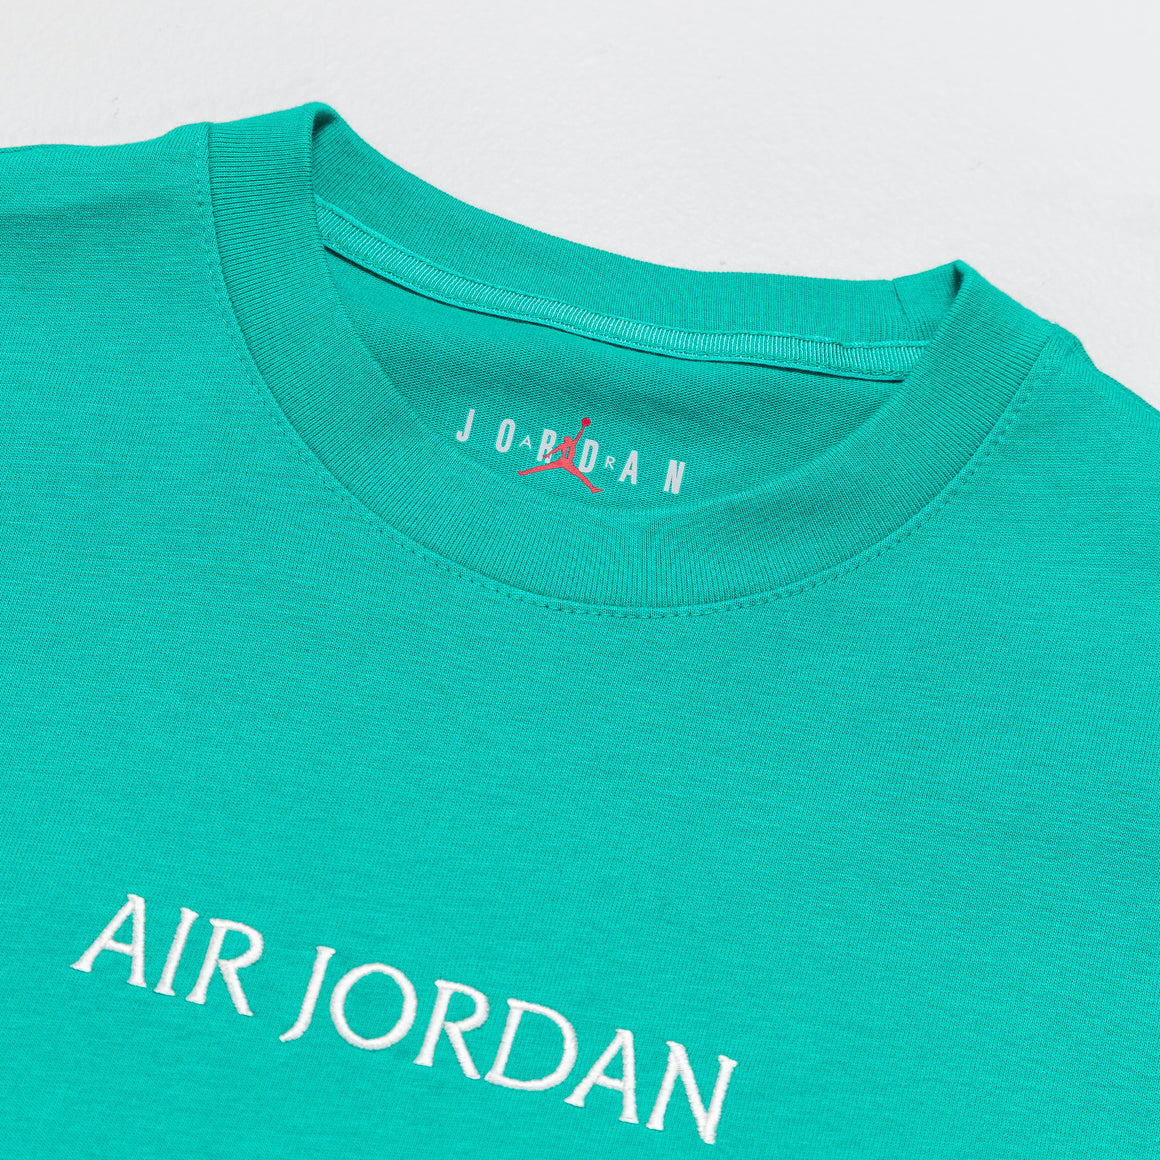 Jordan - Air Jordan Tee - New Emerald/Sail - UP THERE